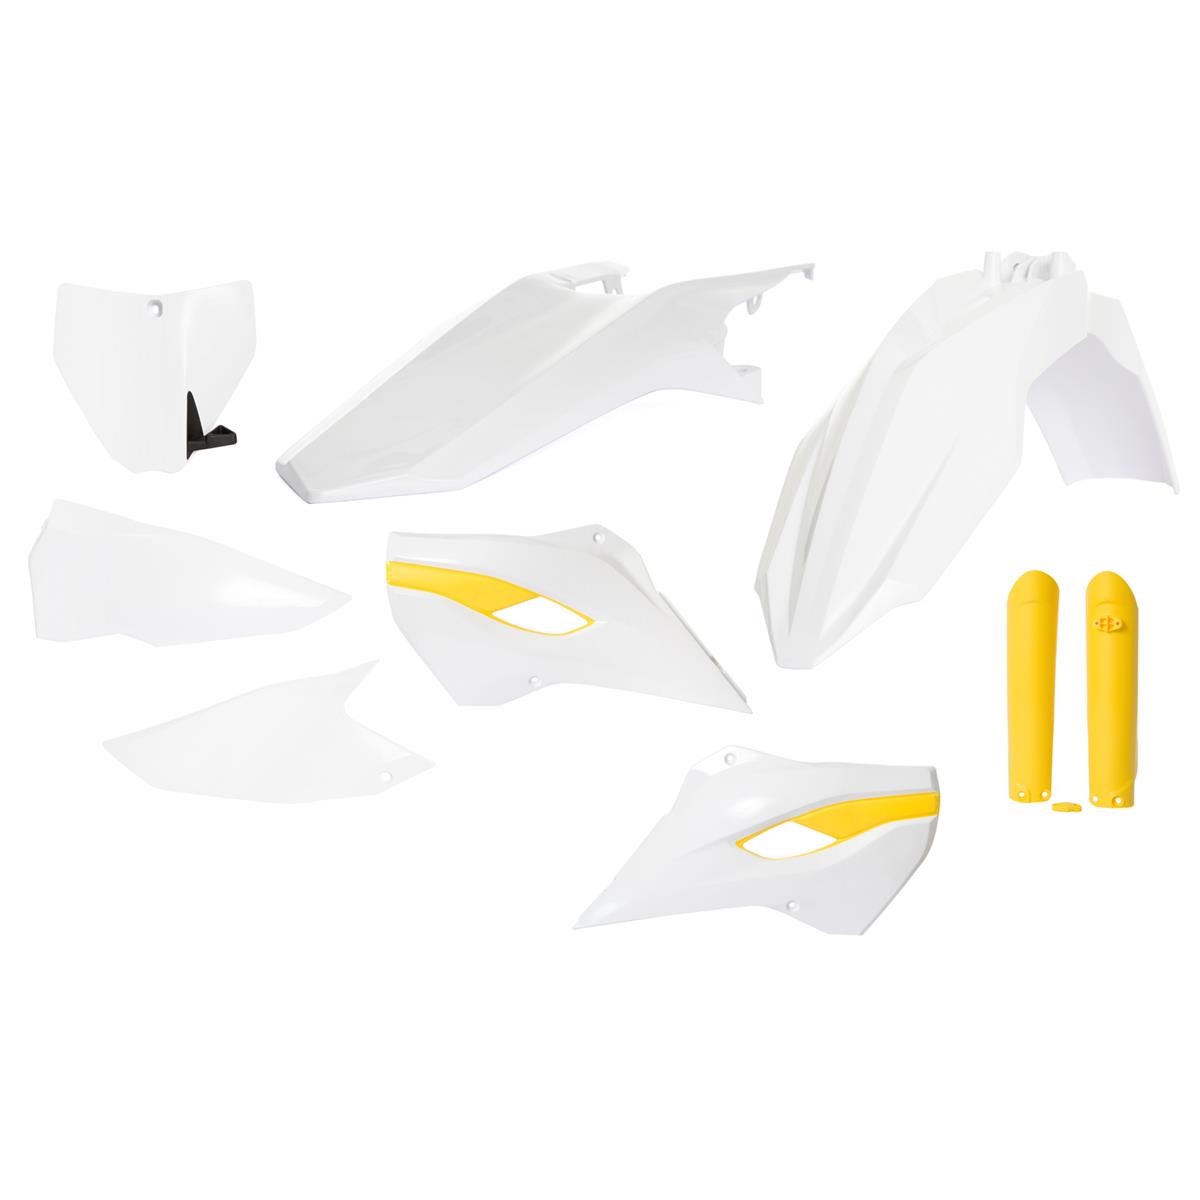 Acerbis Plastik-Kit Full-Kit Husqvarna TC/FC 2015, Replica, Weiß